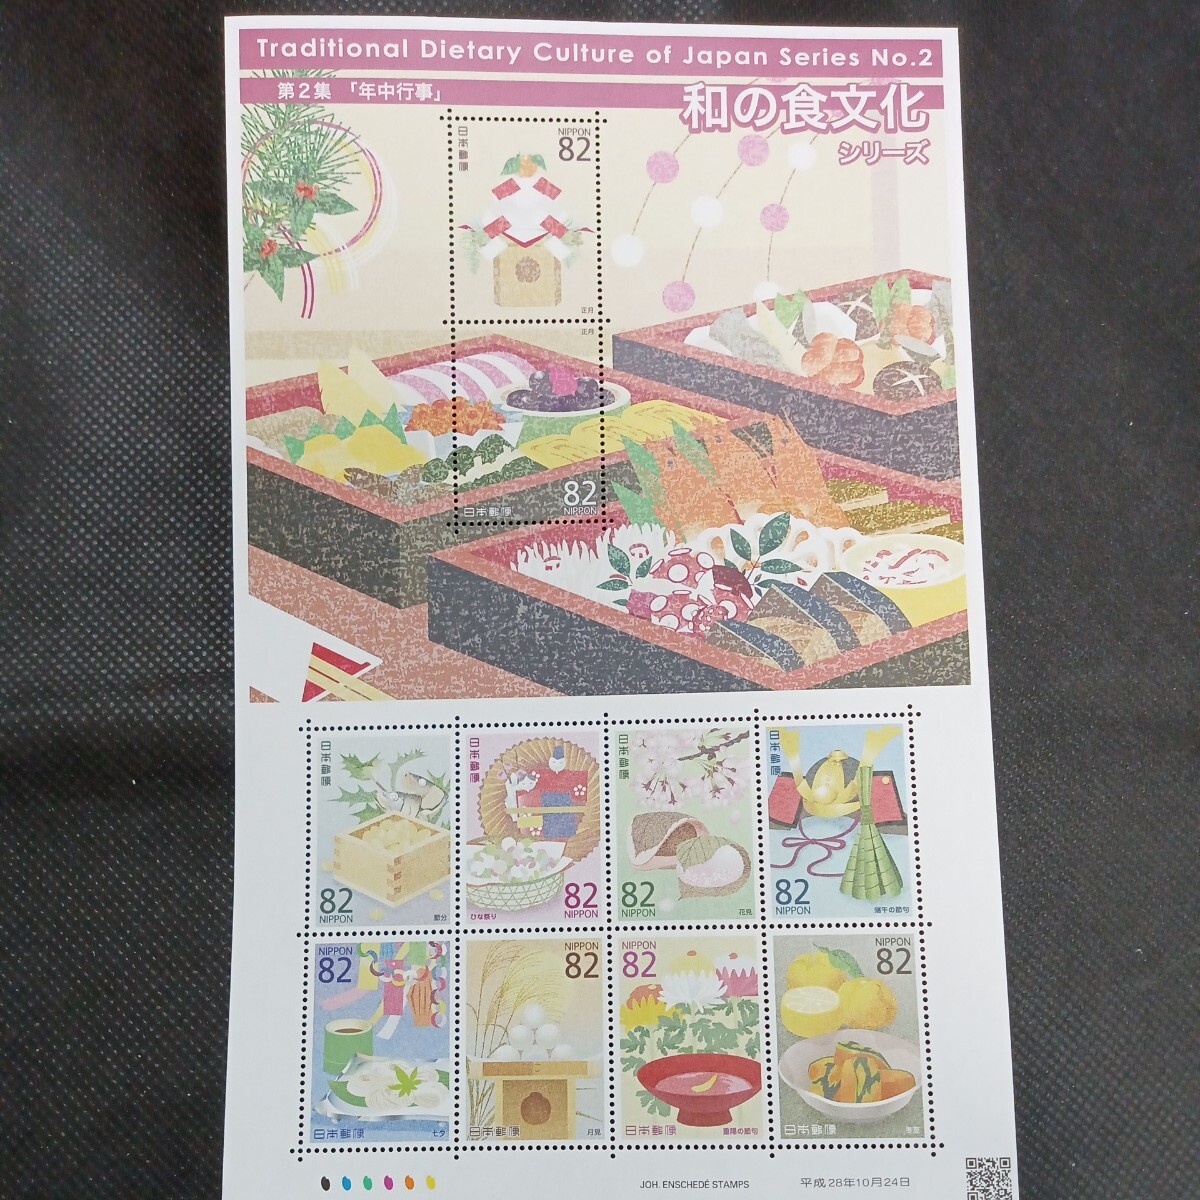 カラーマーク(CM) 和の食文化シリーズ第2集　年中行事　82円切手シート_画像1